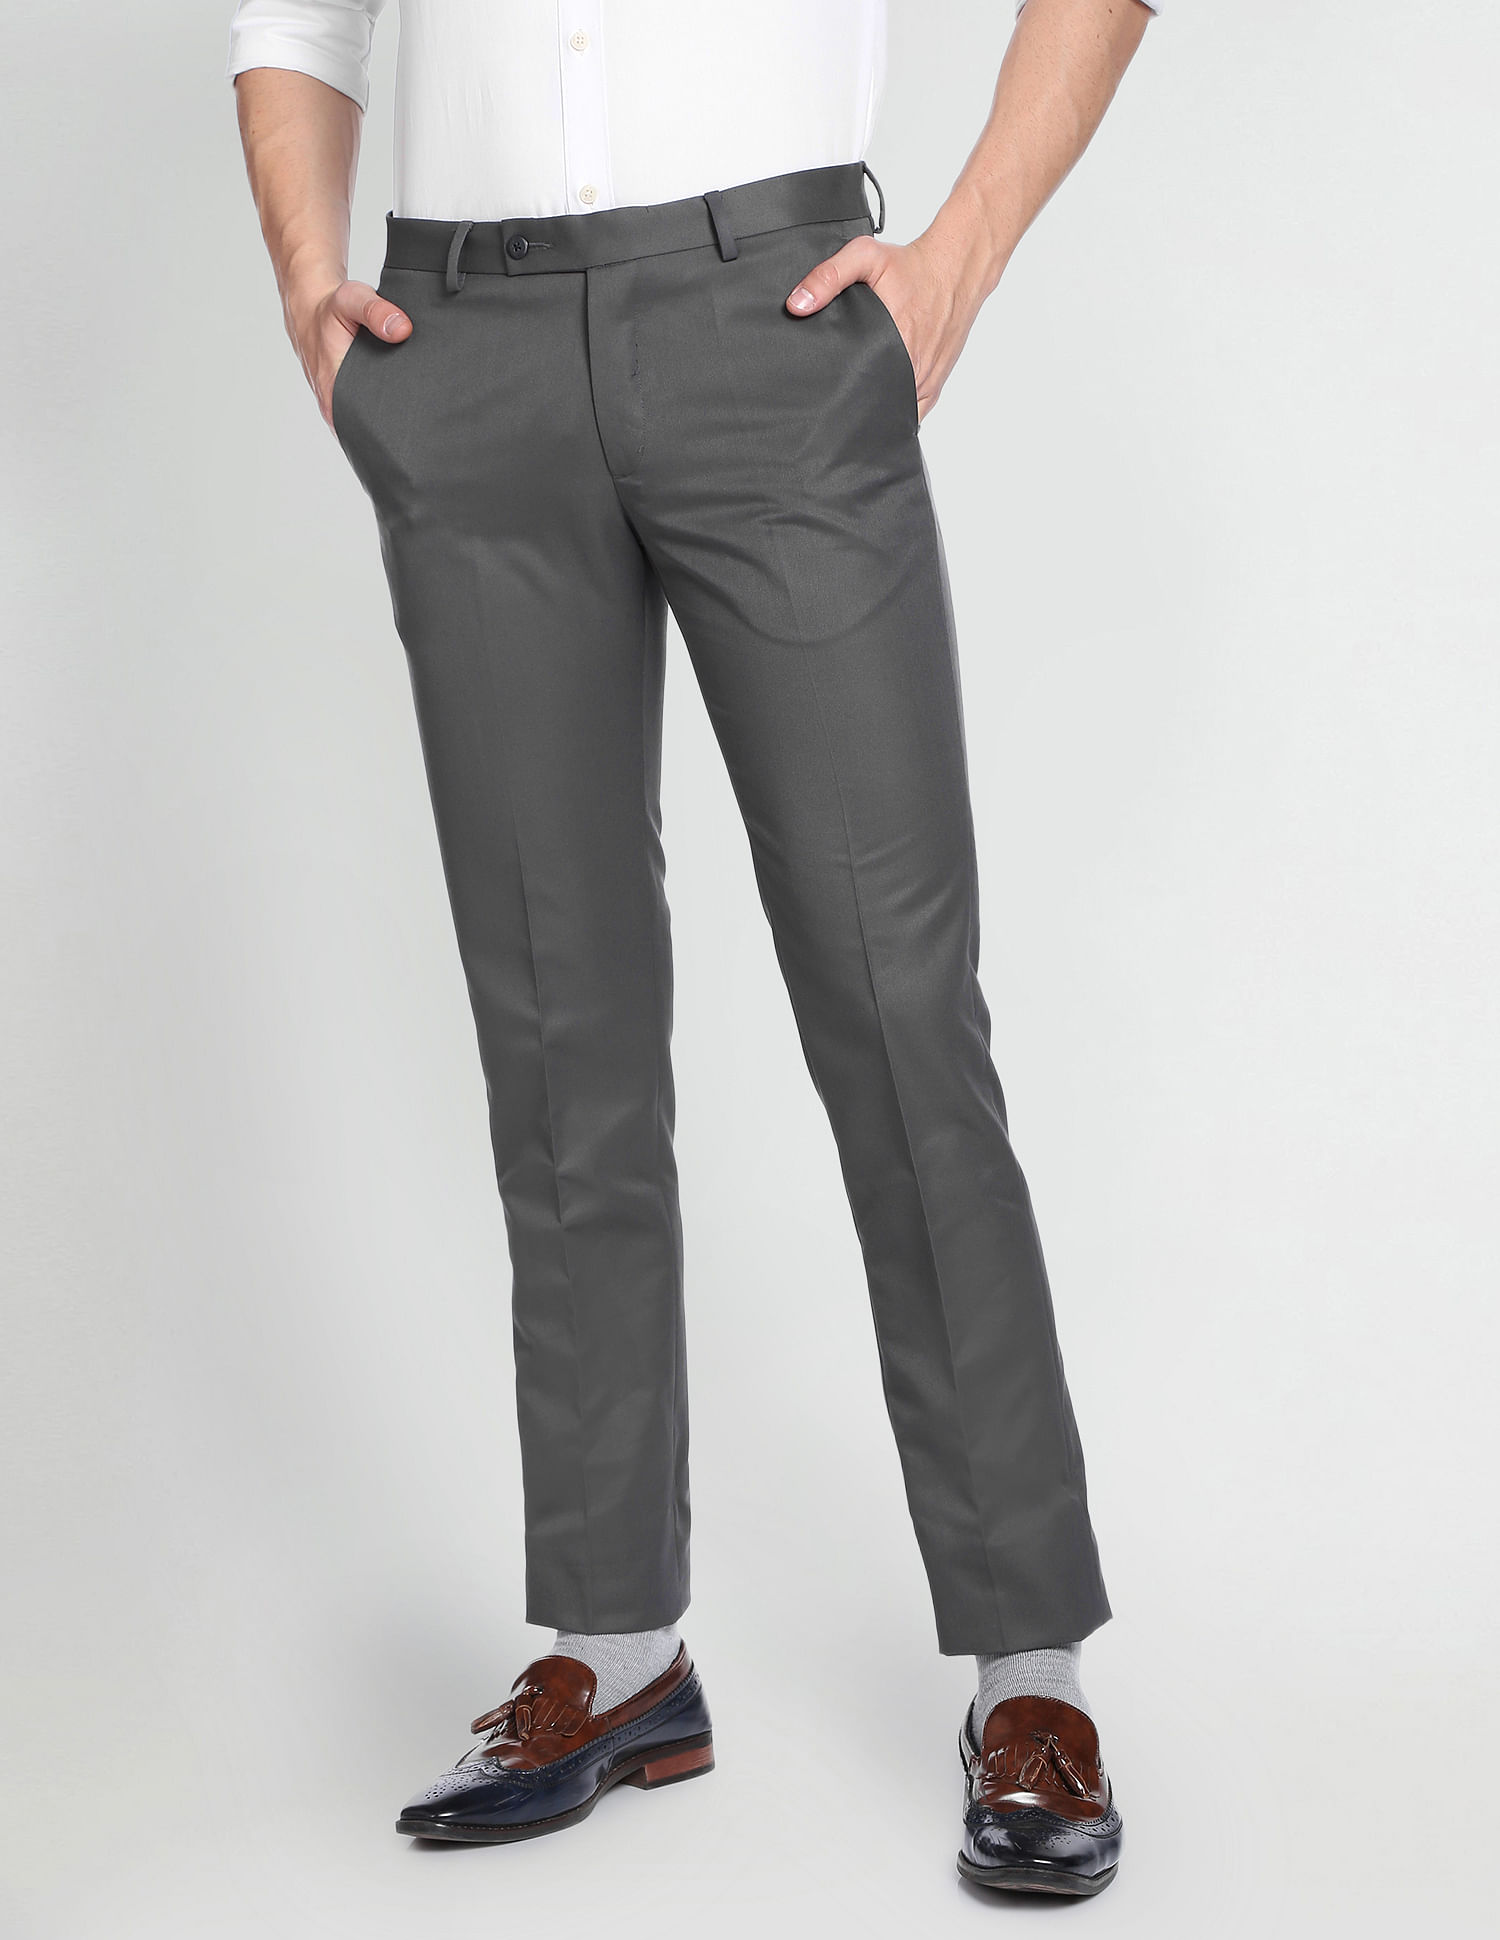 Mens Dress Pants Slim | Office Pants Men | Office Trousers | Men's Pants |  Pants Suit - High - Aliexpress